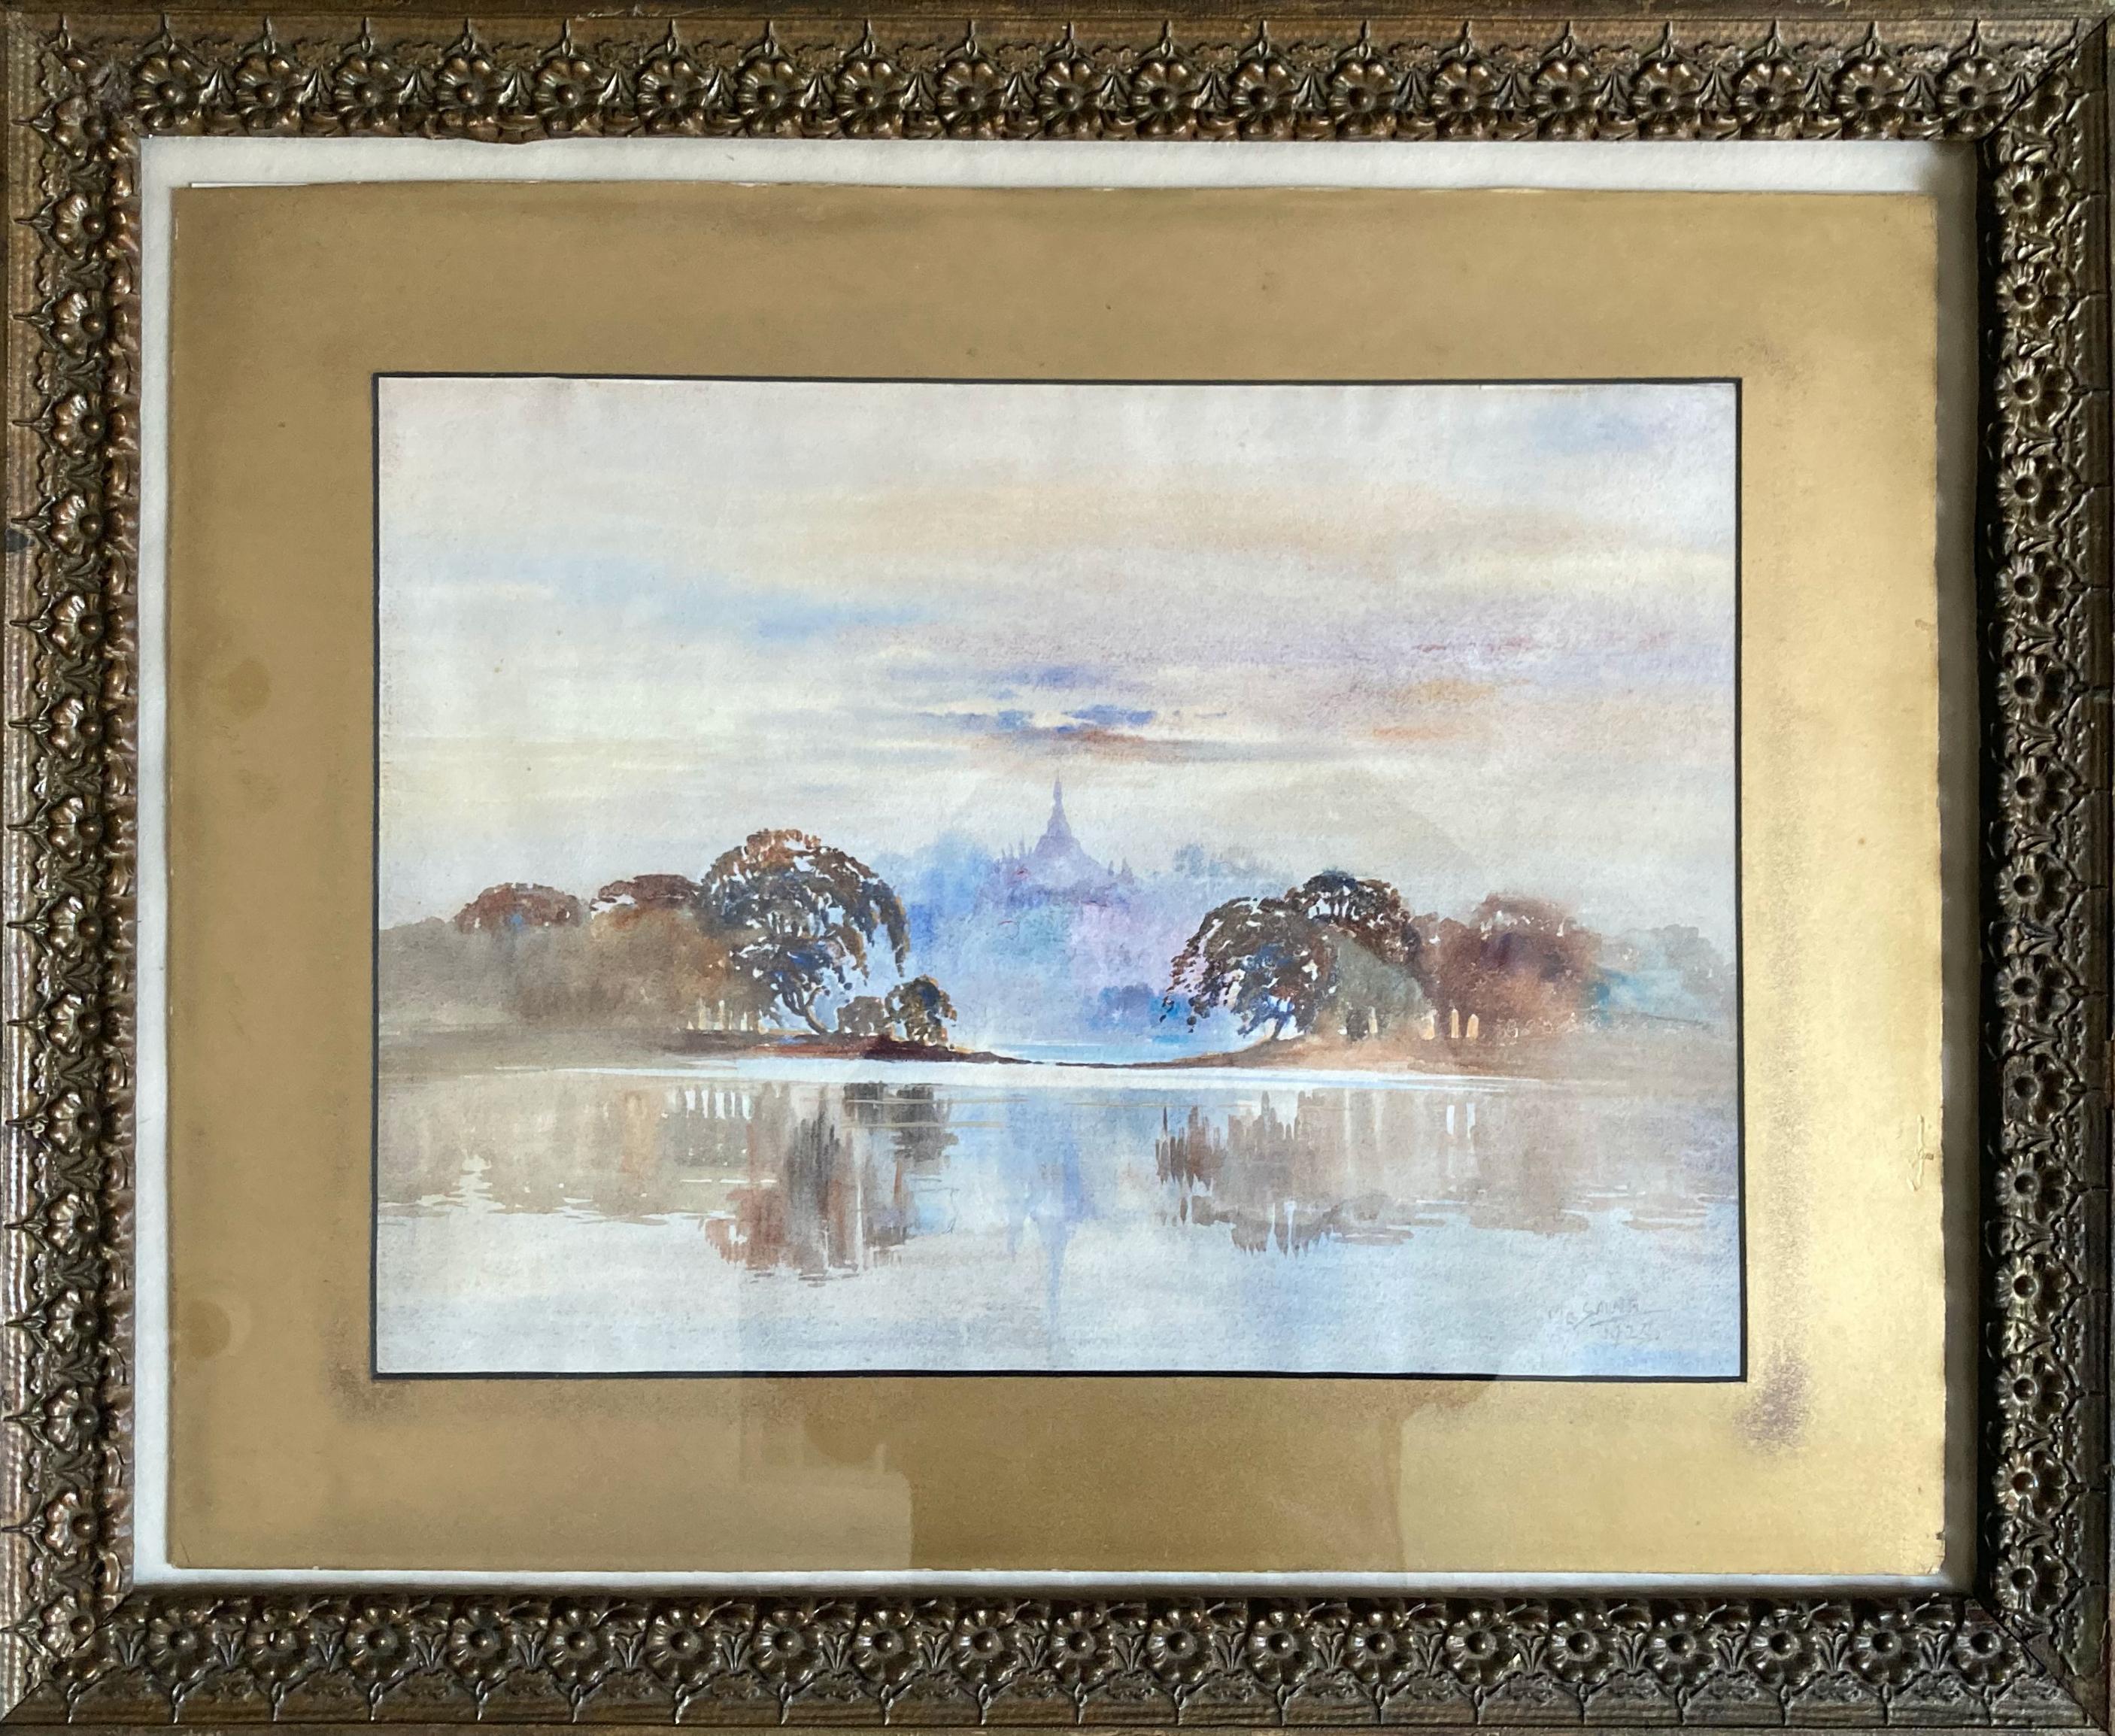 Landscape Art M. C. Laung - "Scène de lac" - Peinture à l'aquarelle de paysage marin encadrée du début du 20e siècle